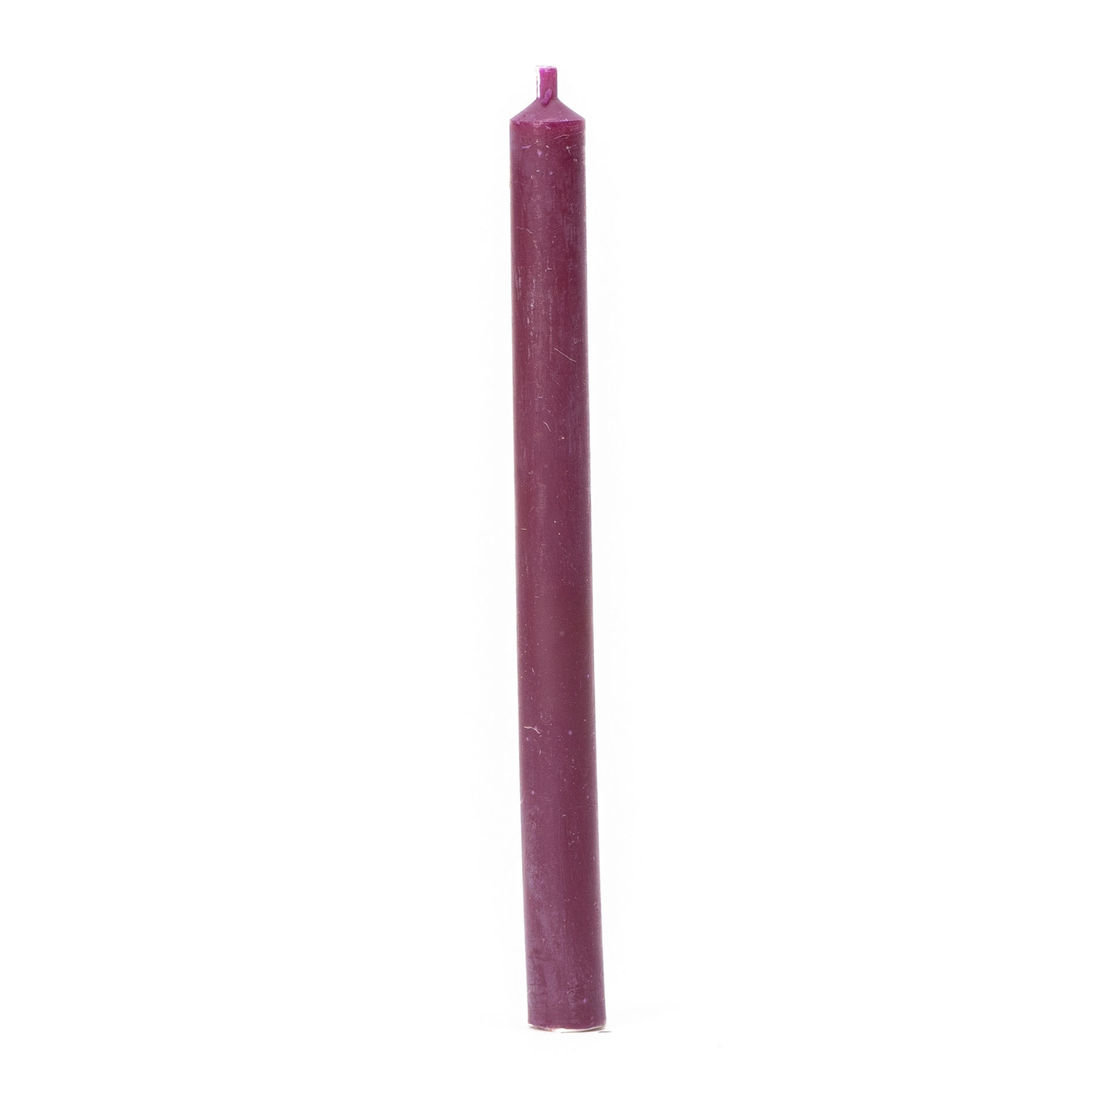 Świeca z wosku pszczelego O-07 dł. 15cm fioletowa